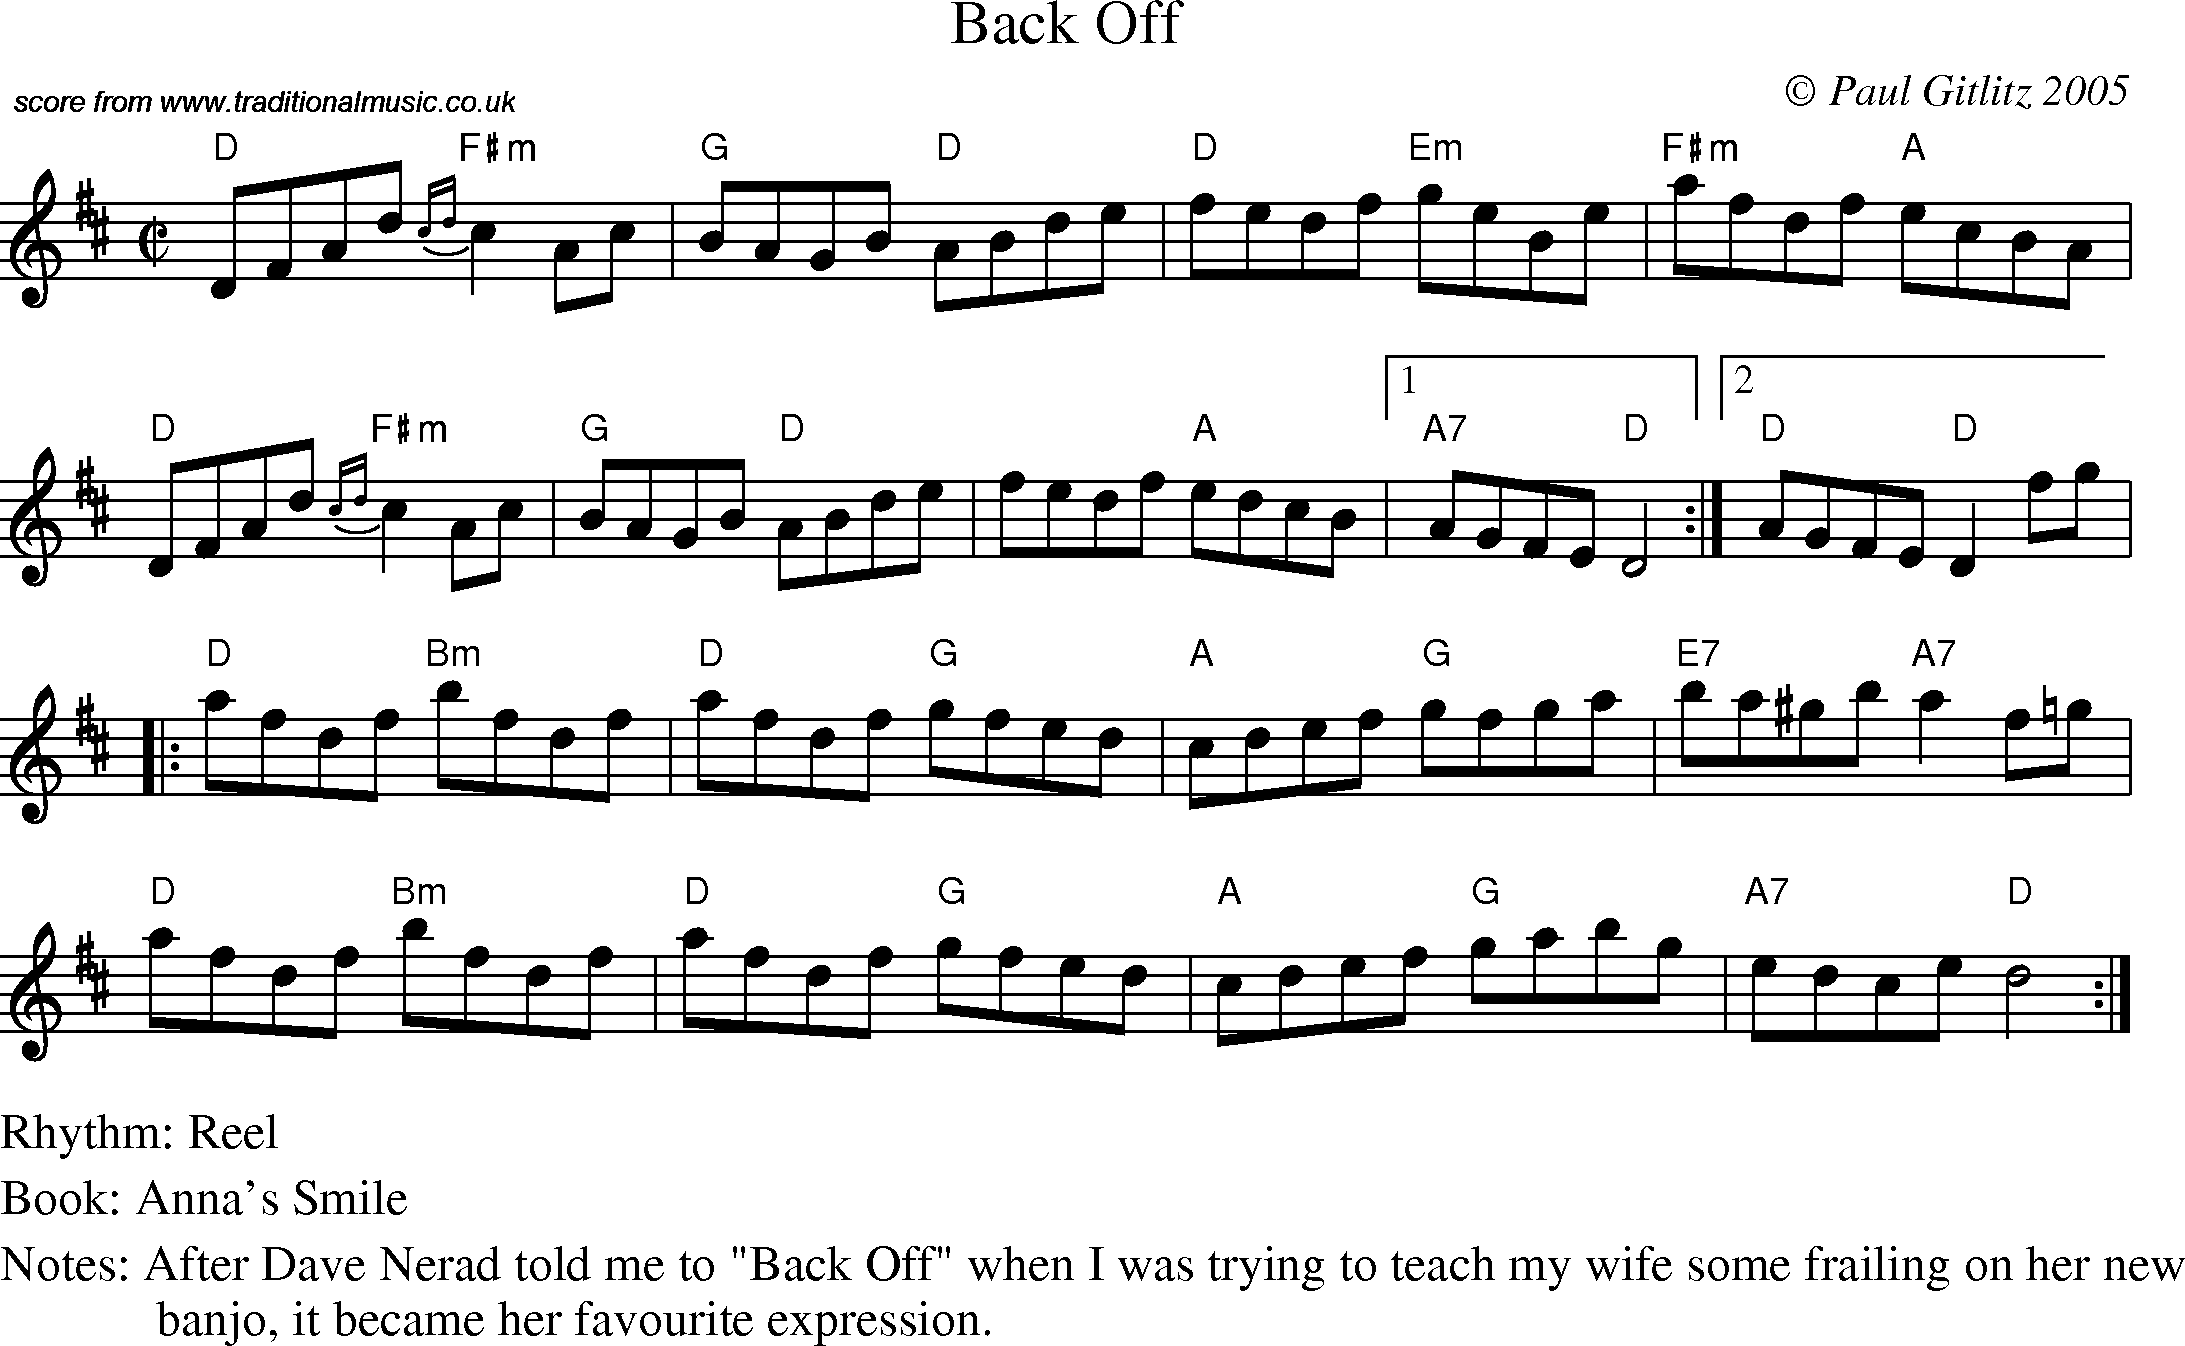 Sheet Music Score for Reel - Back Off